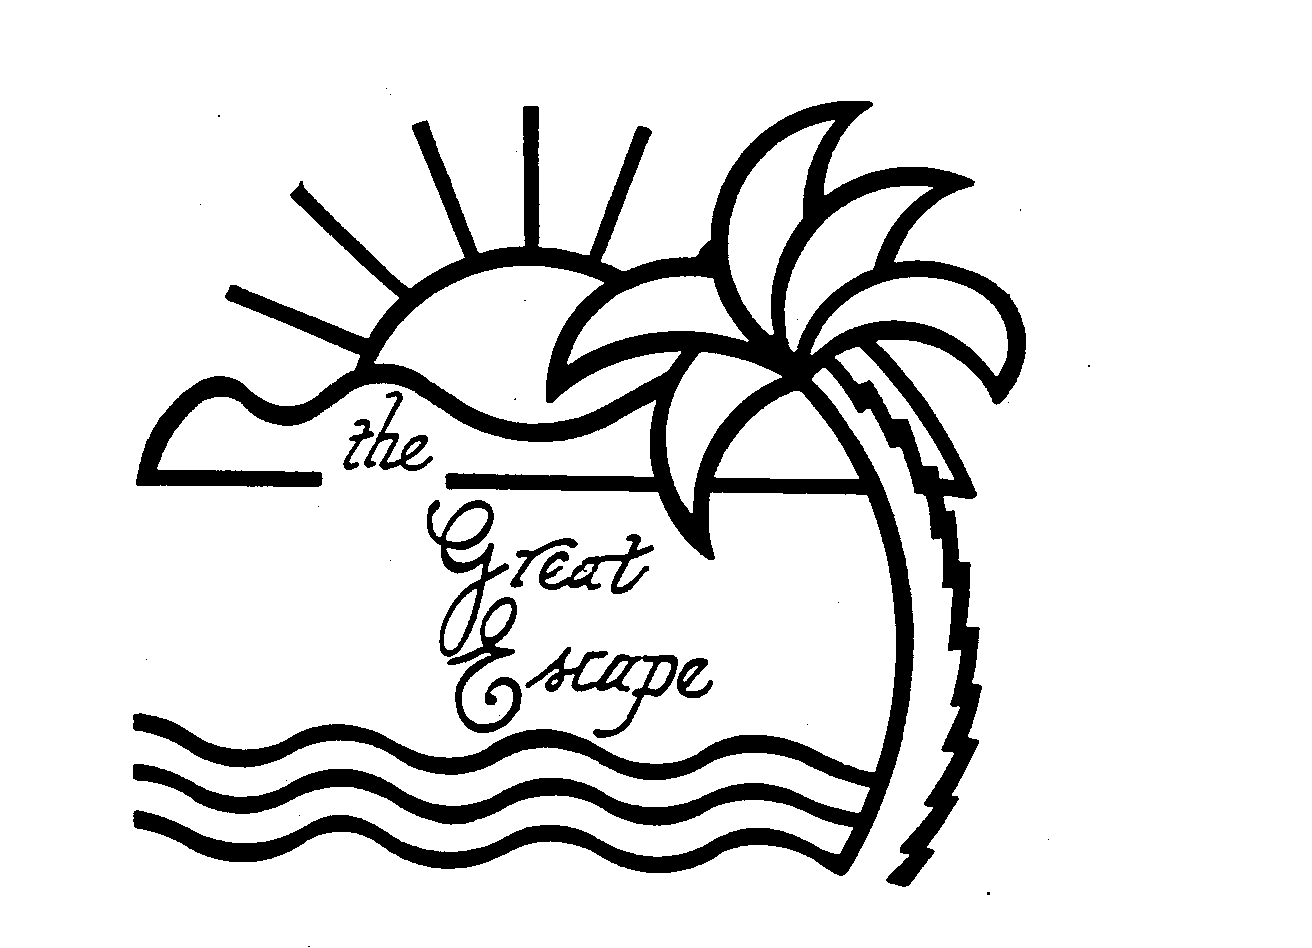 Trademark Logo THE GREAT ESCAPE